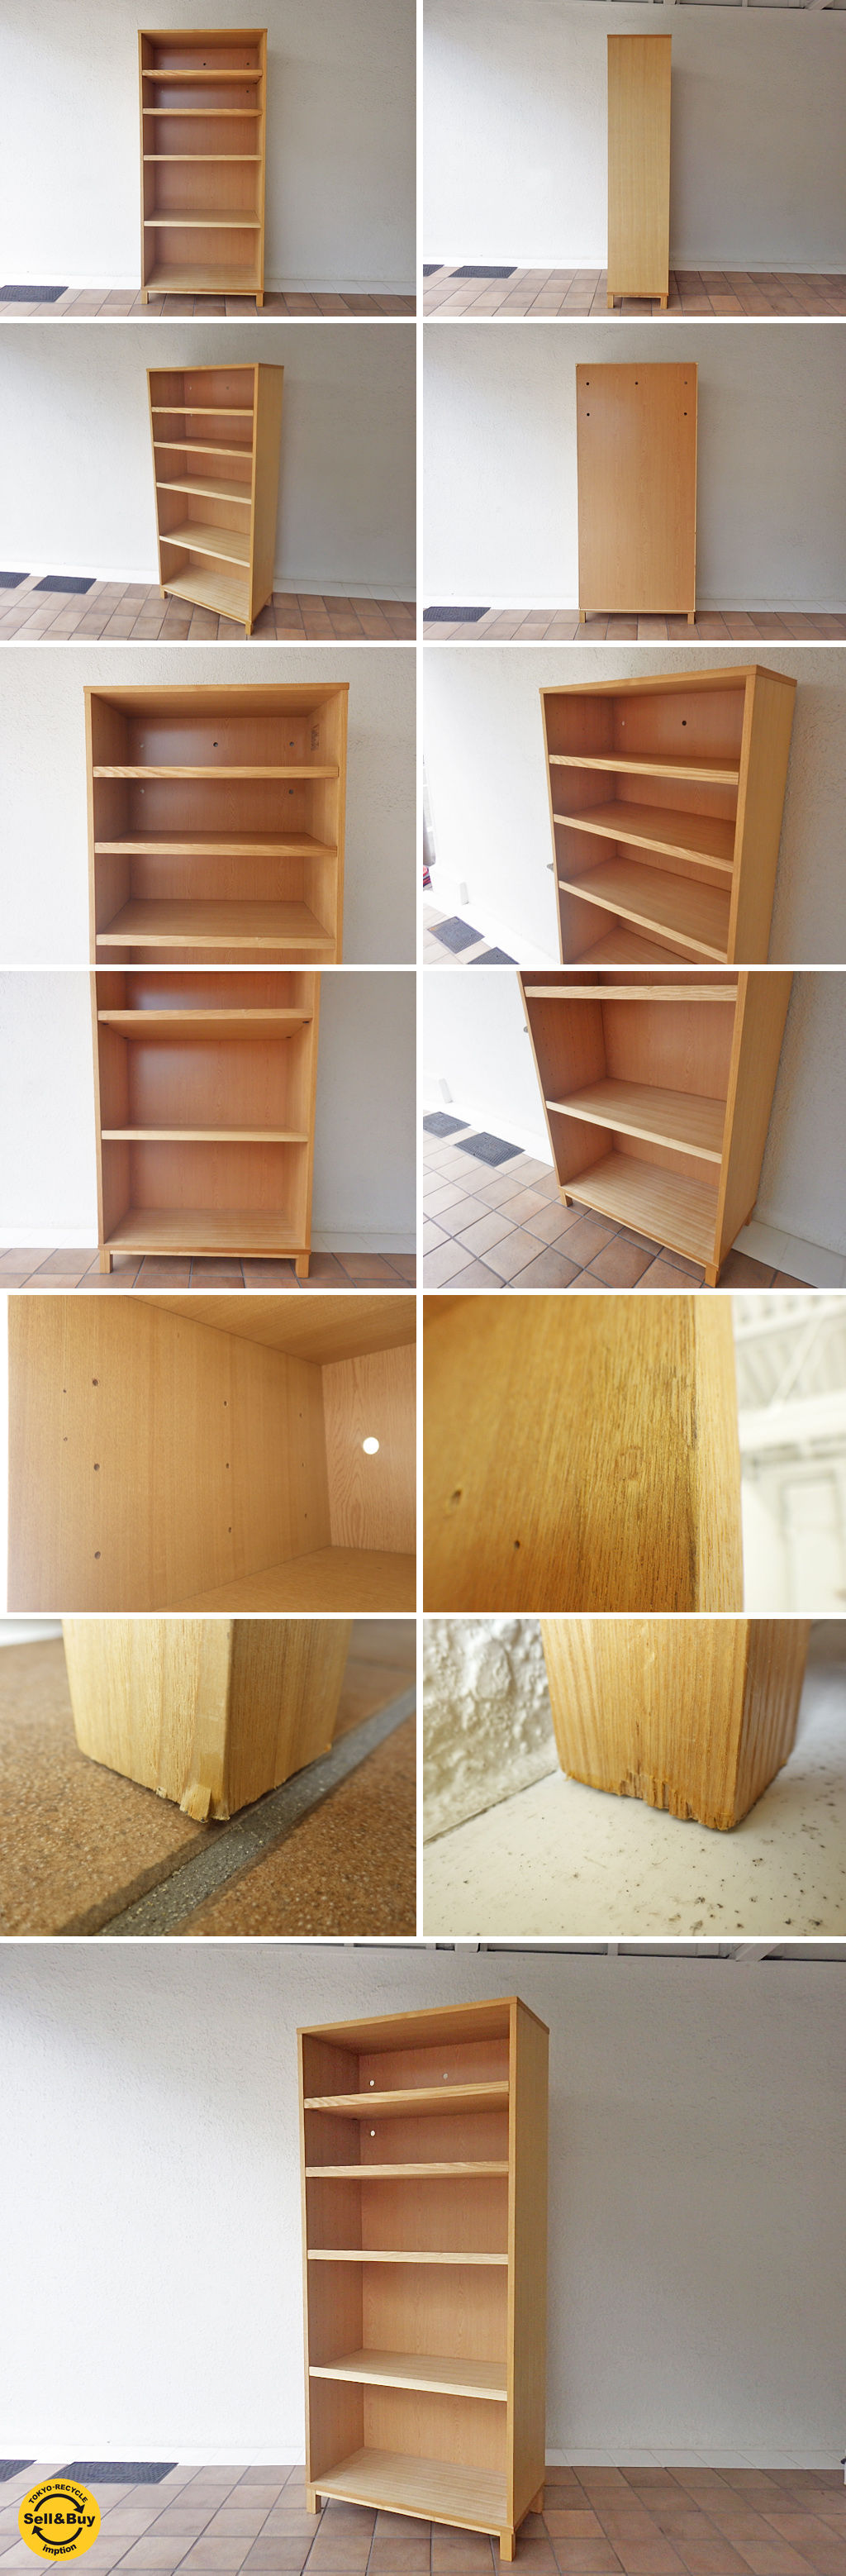 無印良品 MUJI タモ材 組み合わせて使える木製収納 本棚 